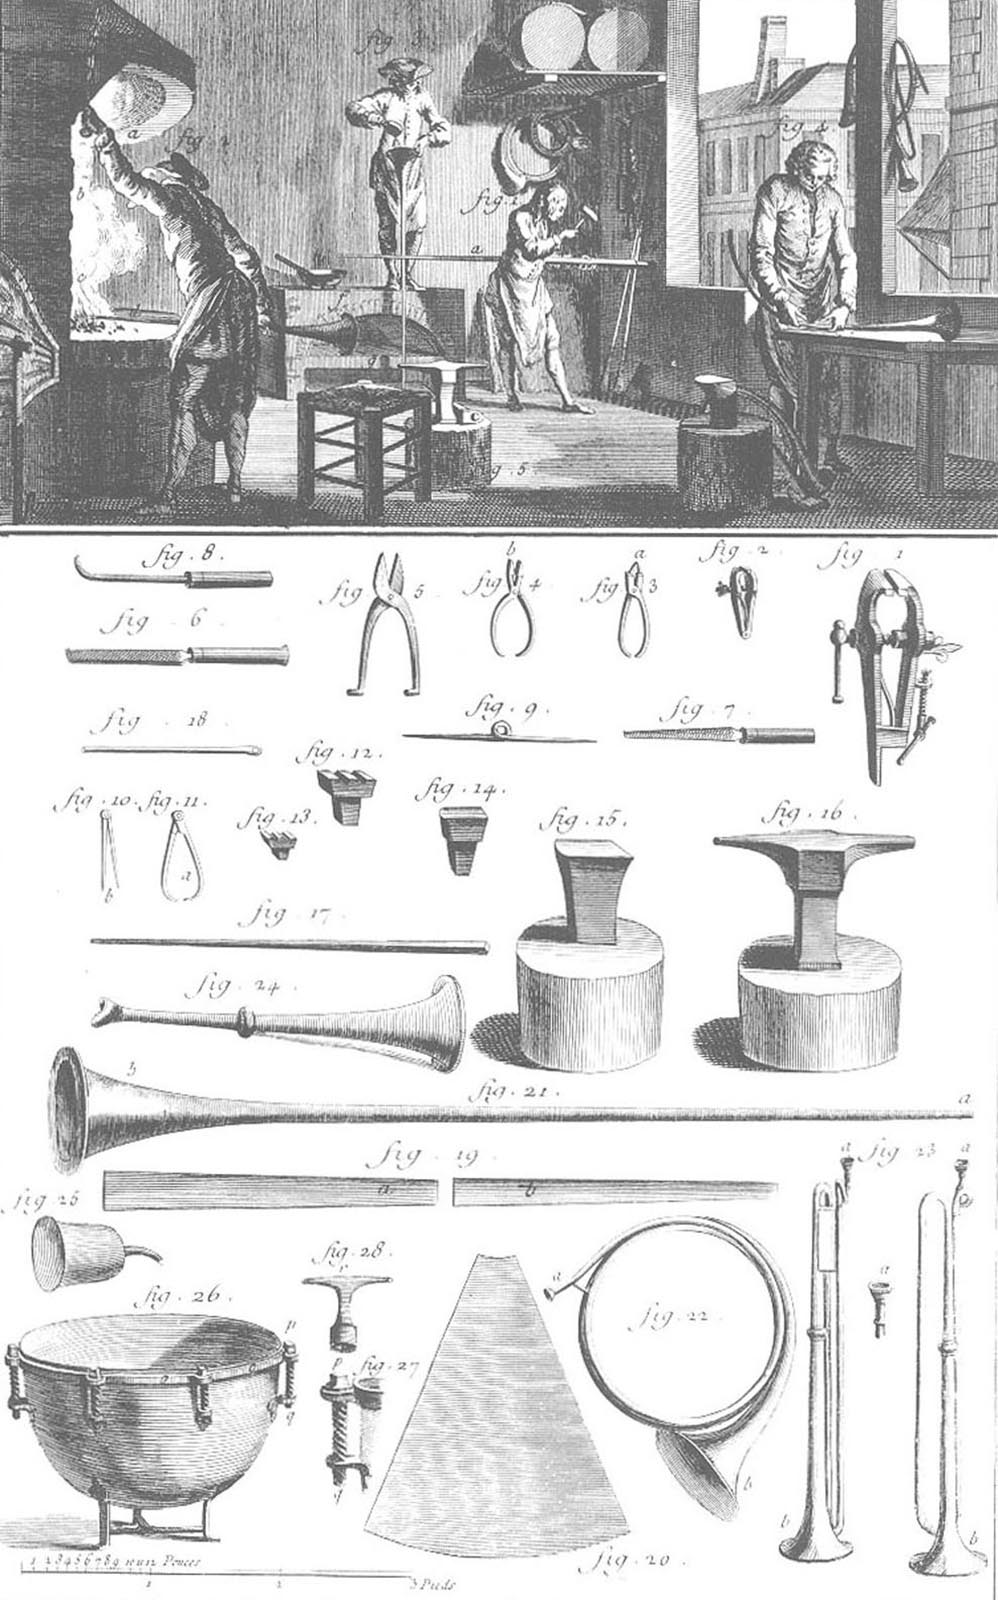 Instruments musicaux de l'atelier du chaudronnier - trompettes, cors et timbales et pièces détachées. Gravure de Diderot